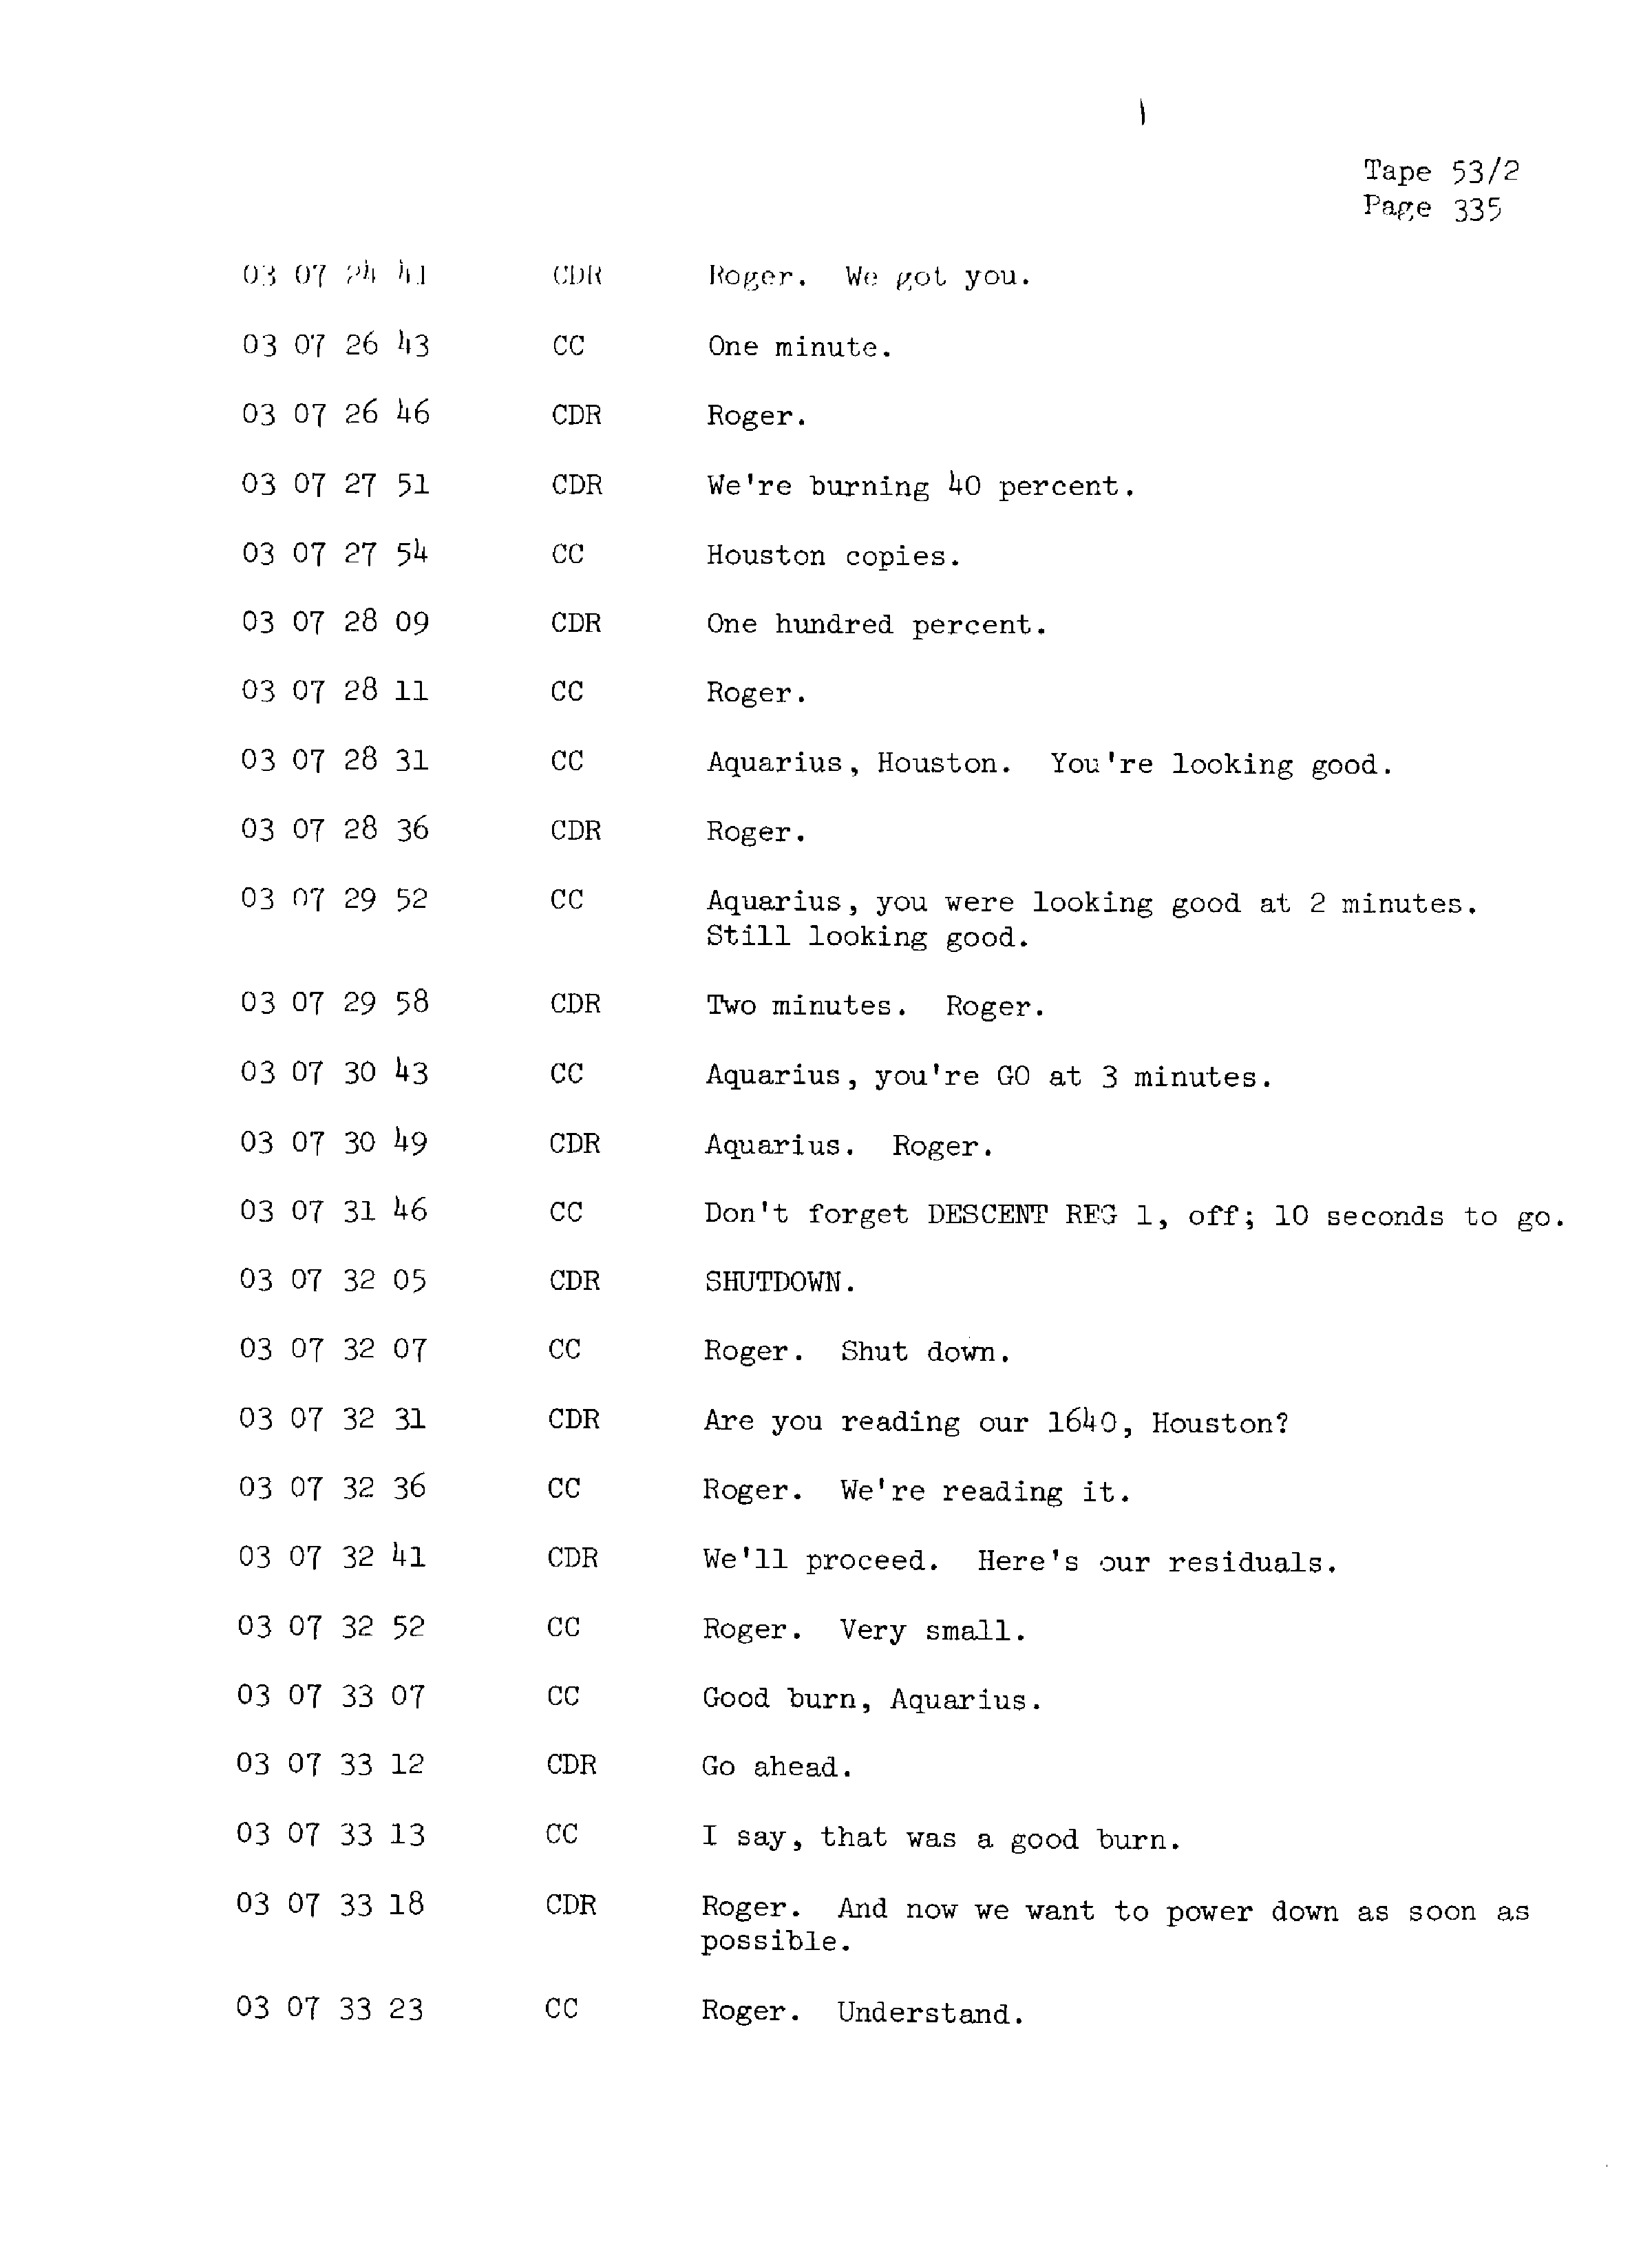 Page 342 of Apollo 13’s original transcript